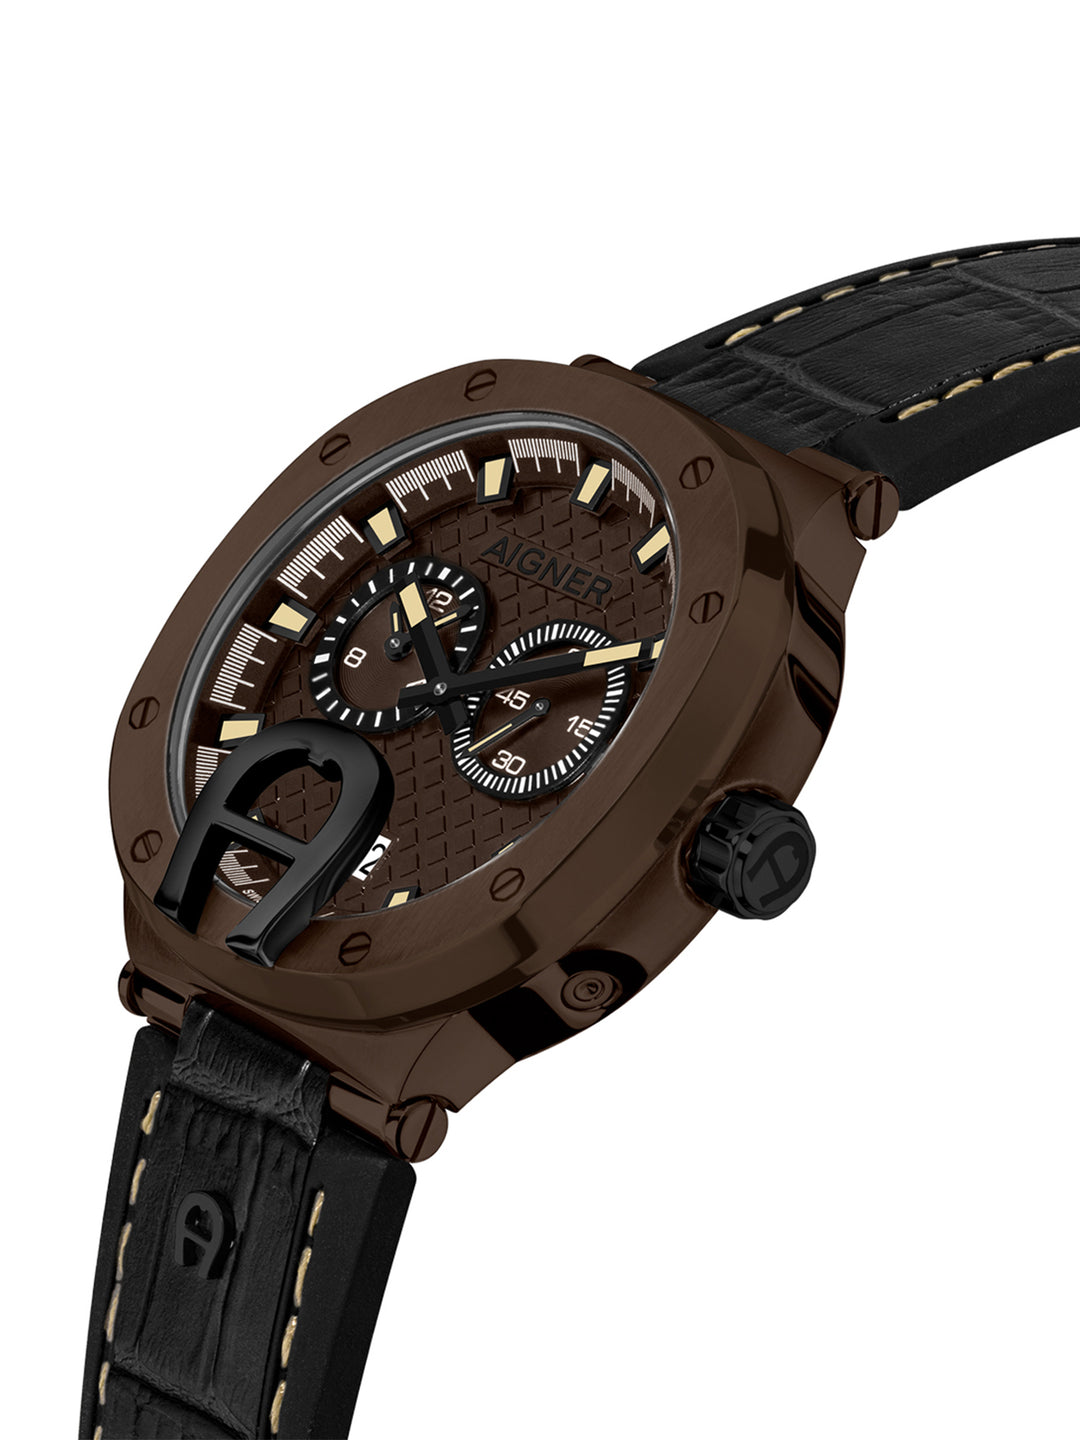 Taviano Swiss Made Multifunction Men's Watch -ARWGA0000712